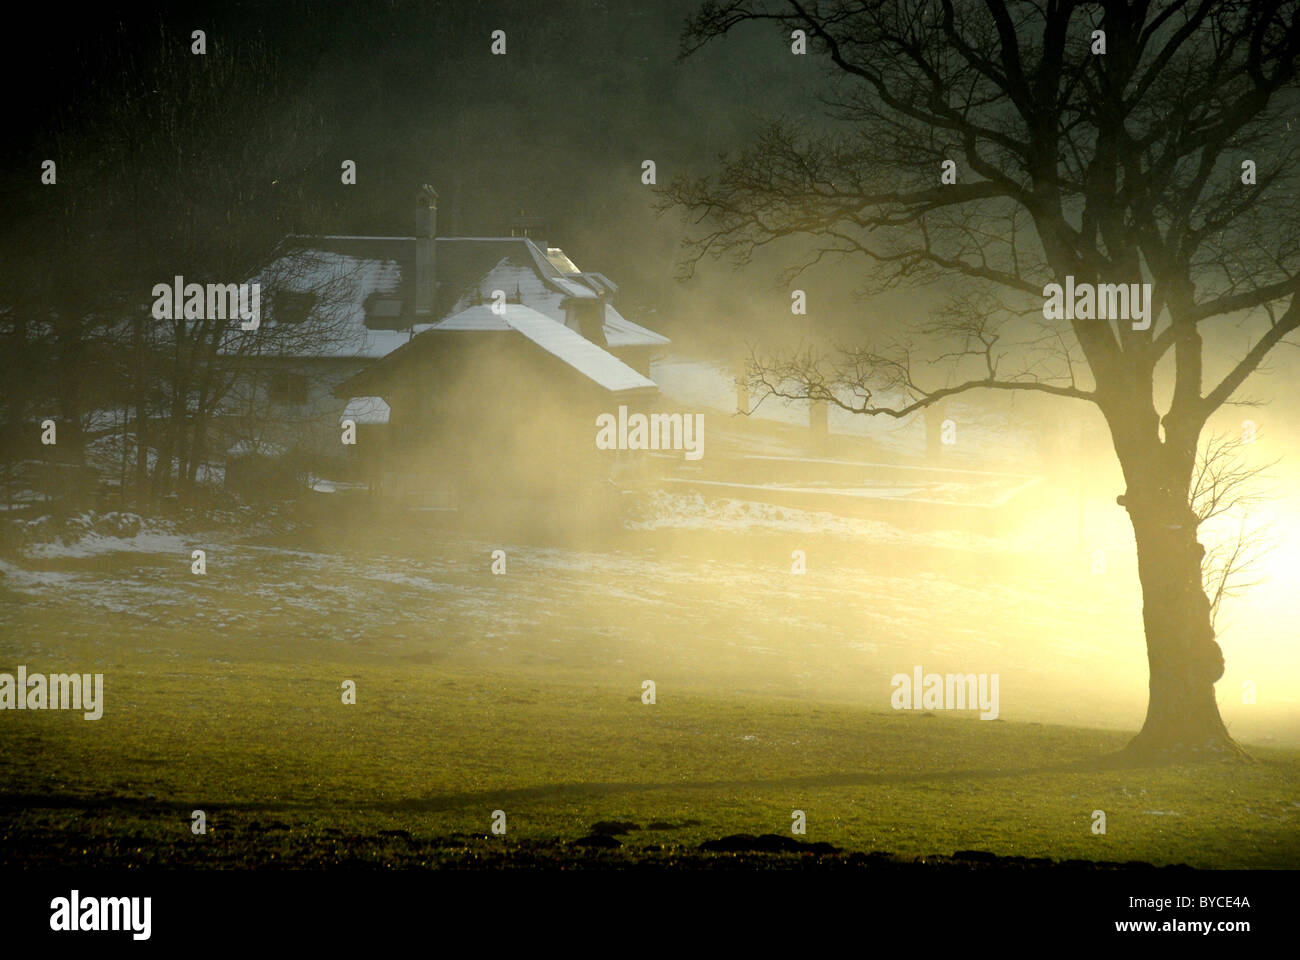 Gîte rural dans le brouillard avec arbre, autmn Chaumont, Jura, Neuchâtel, Suisse Banque D'Images